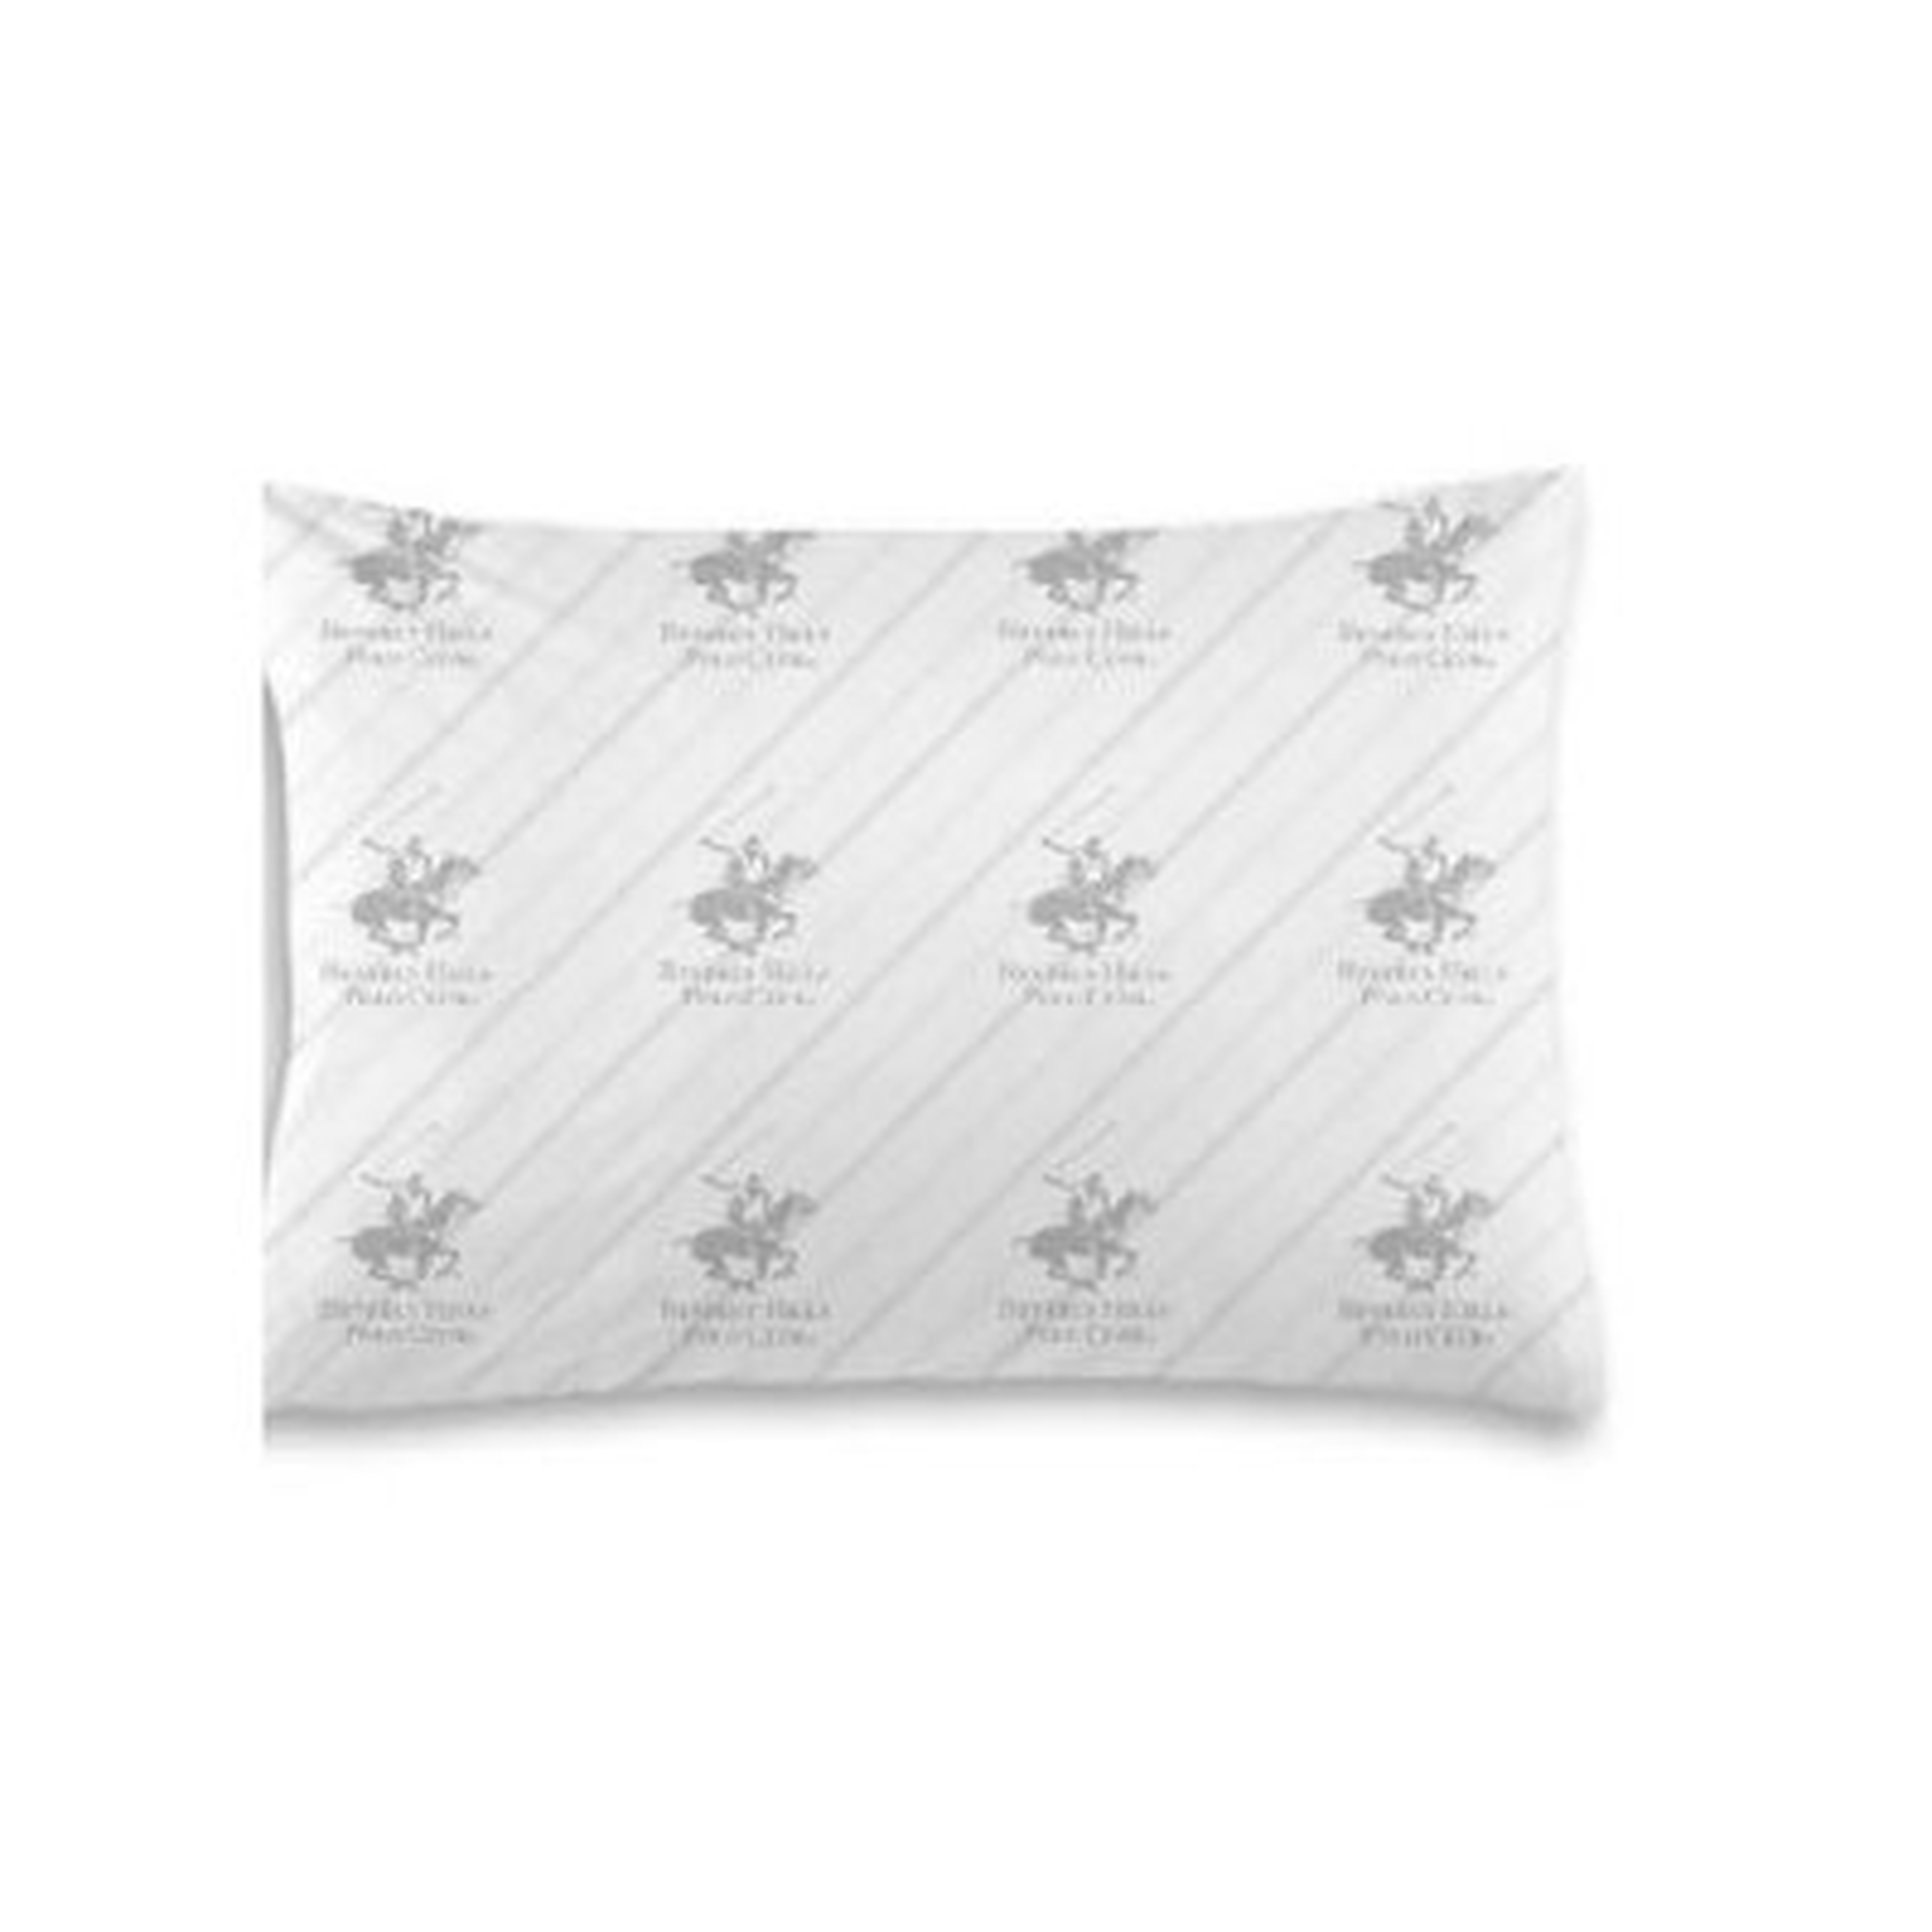 Allergy Relief Medium Fiber Queen Bed Pillow - Wayfair